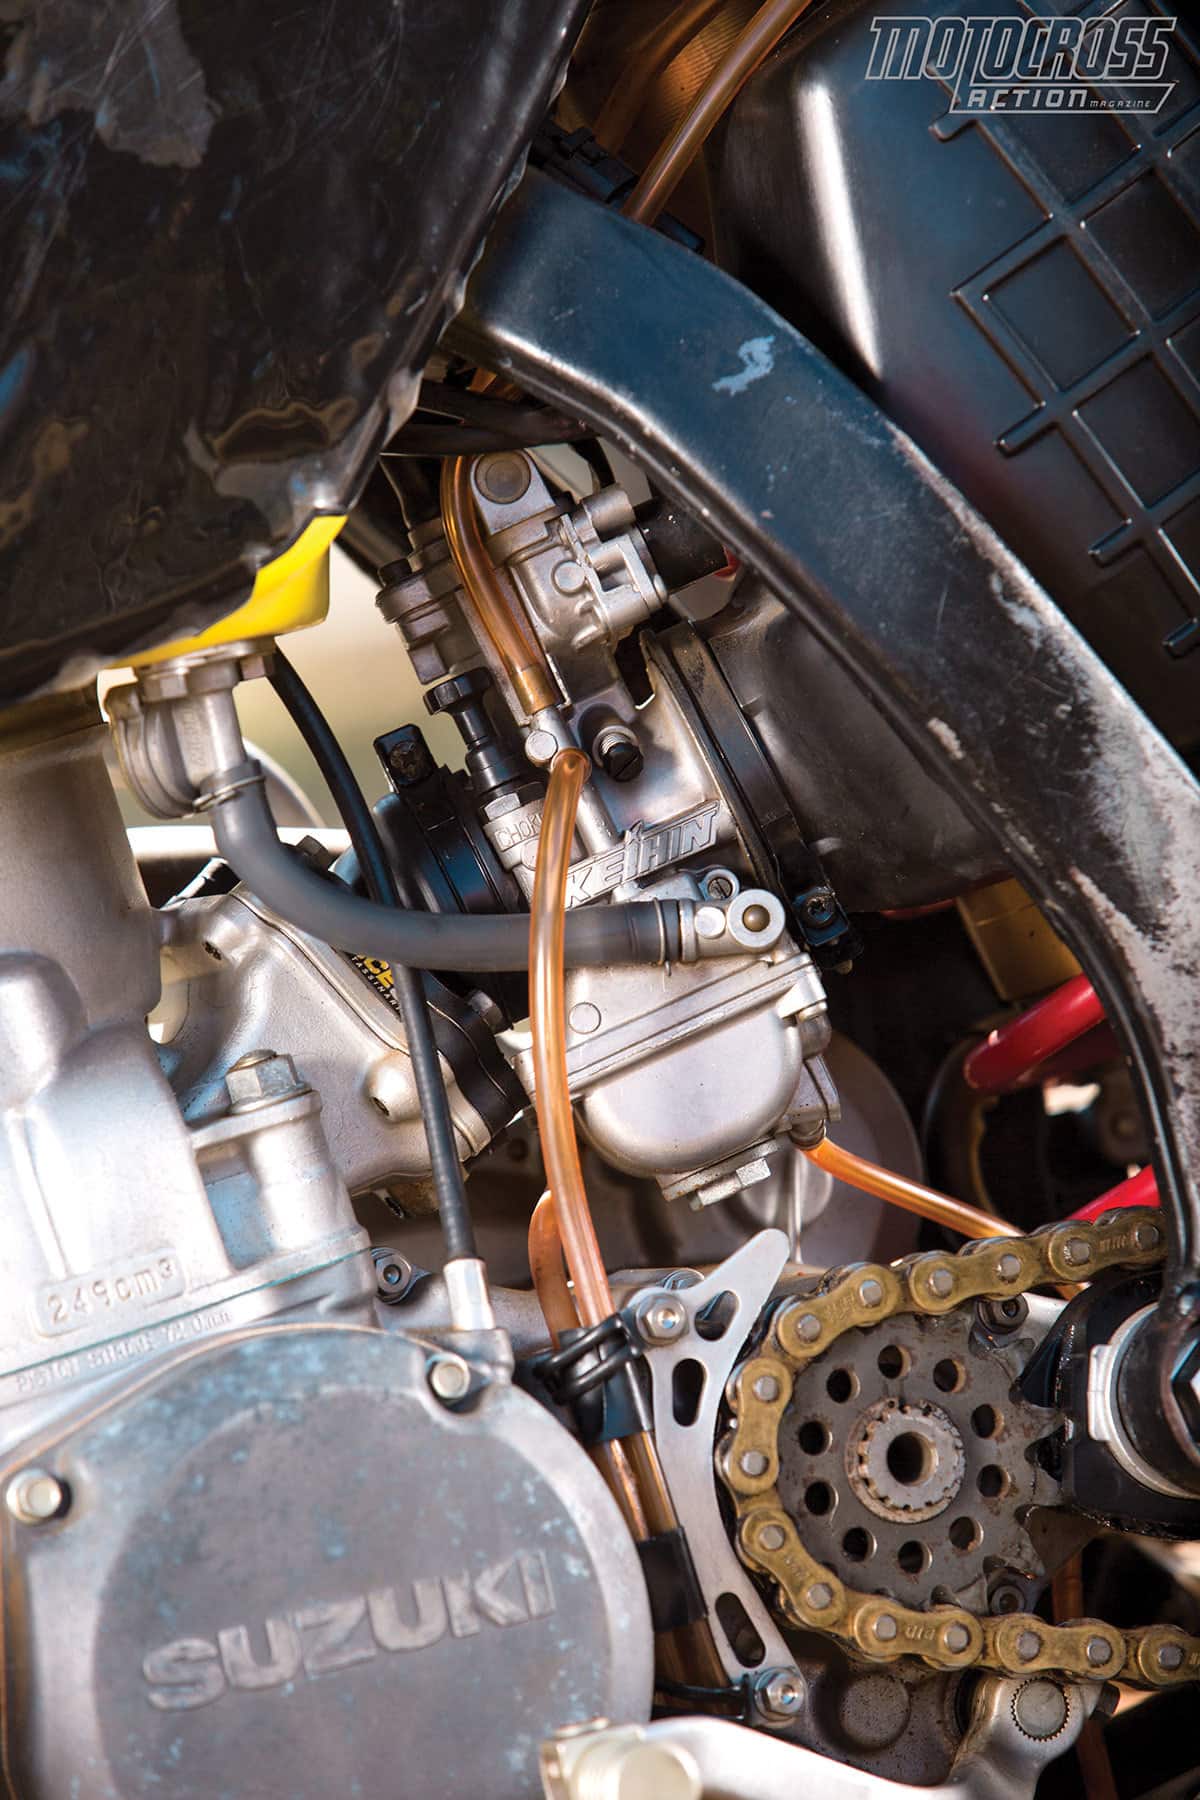 Qualsiasi sintonizzatore del motore a due tempi serio ti dirà che i maggiori guadagni possono essere ottenuti in una configurazione pulita del carburatore.